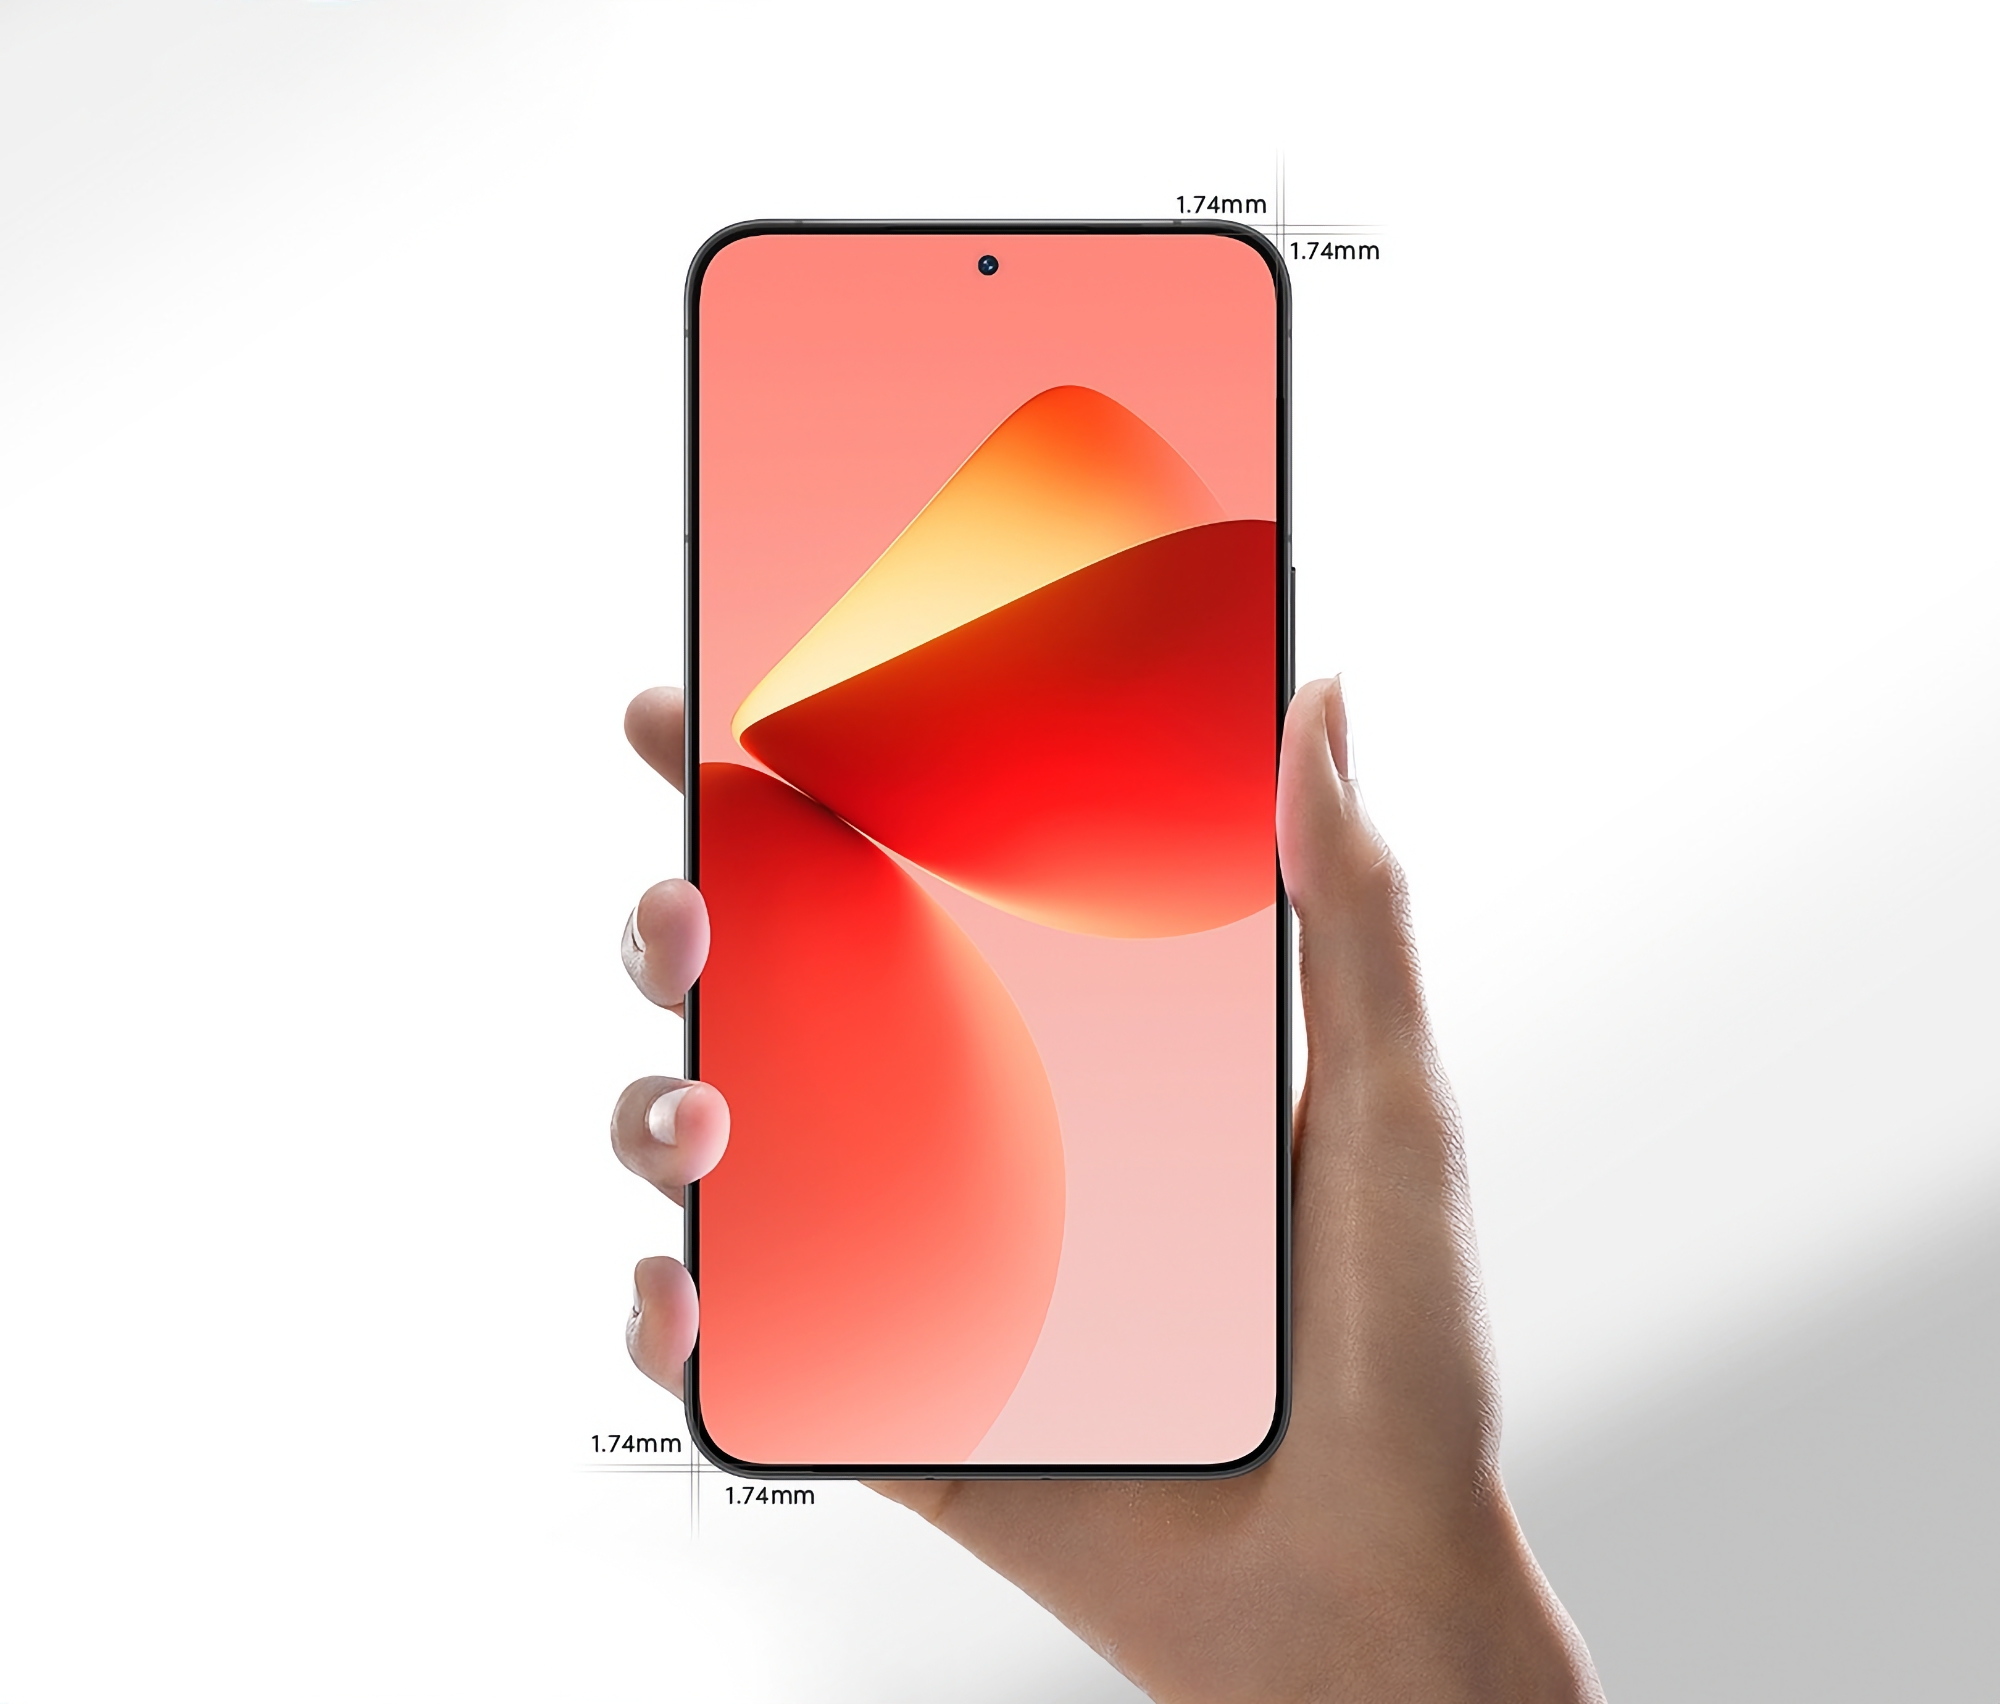 Het AMOLED-scherm van Samsung en symmetrische randen van 1,74 mm dik: Meizu is begonnen met het teaseren van een nieuwe vlaggenschip smartphone